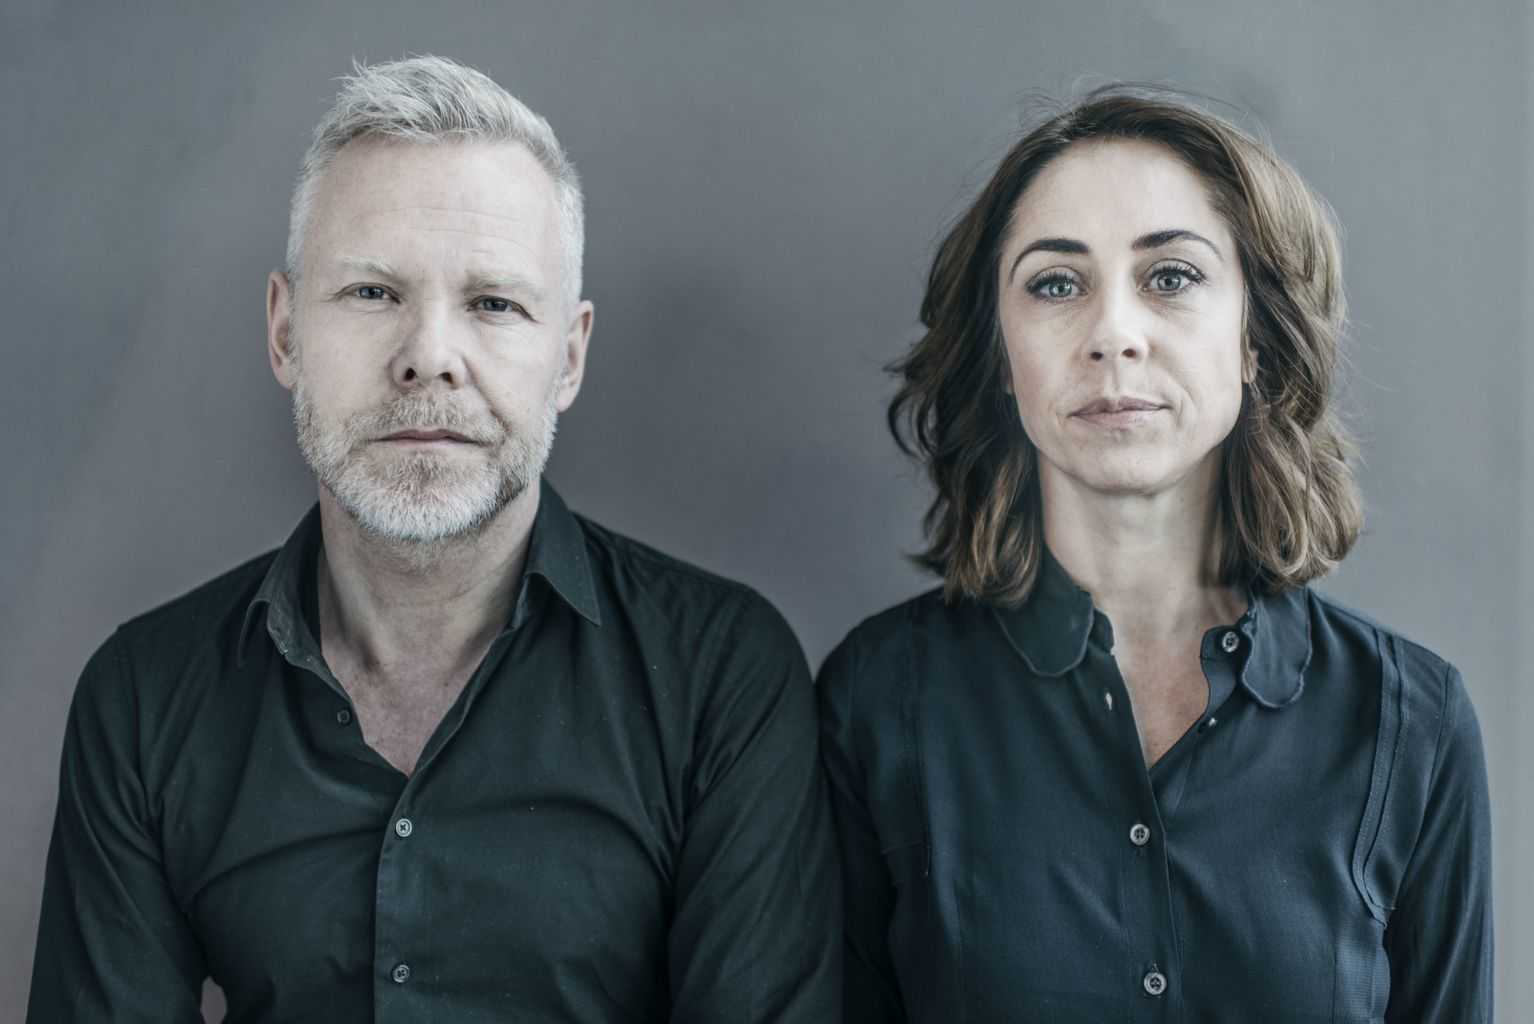 Pressebillede. Morten Kirkskov og Sofie Graabøl.